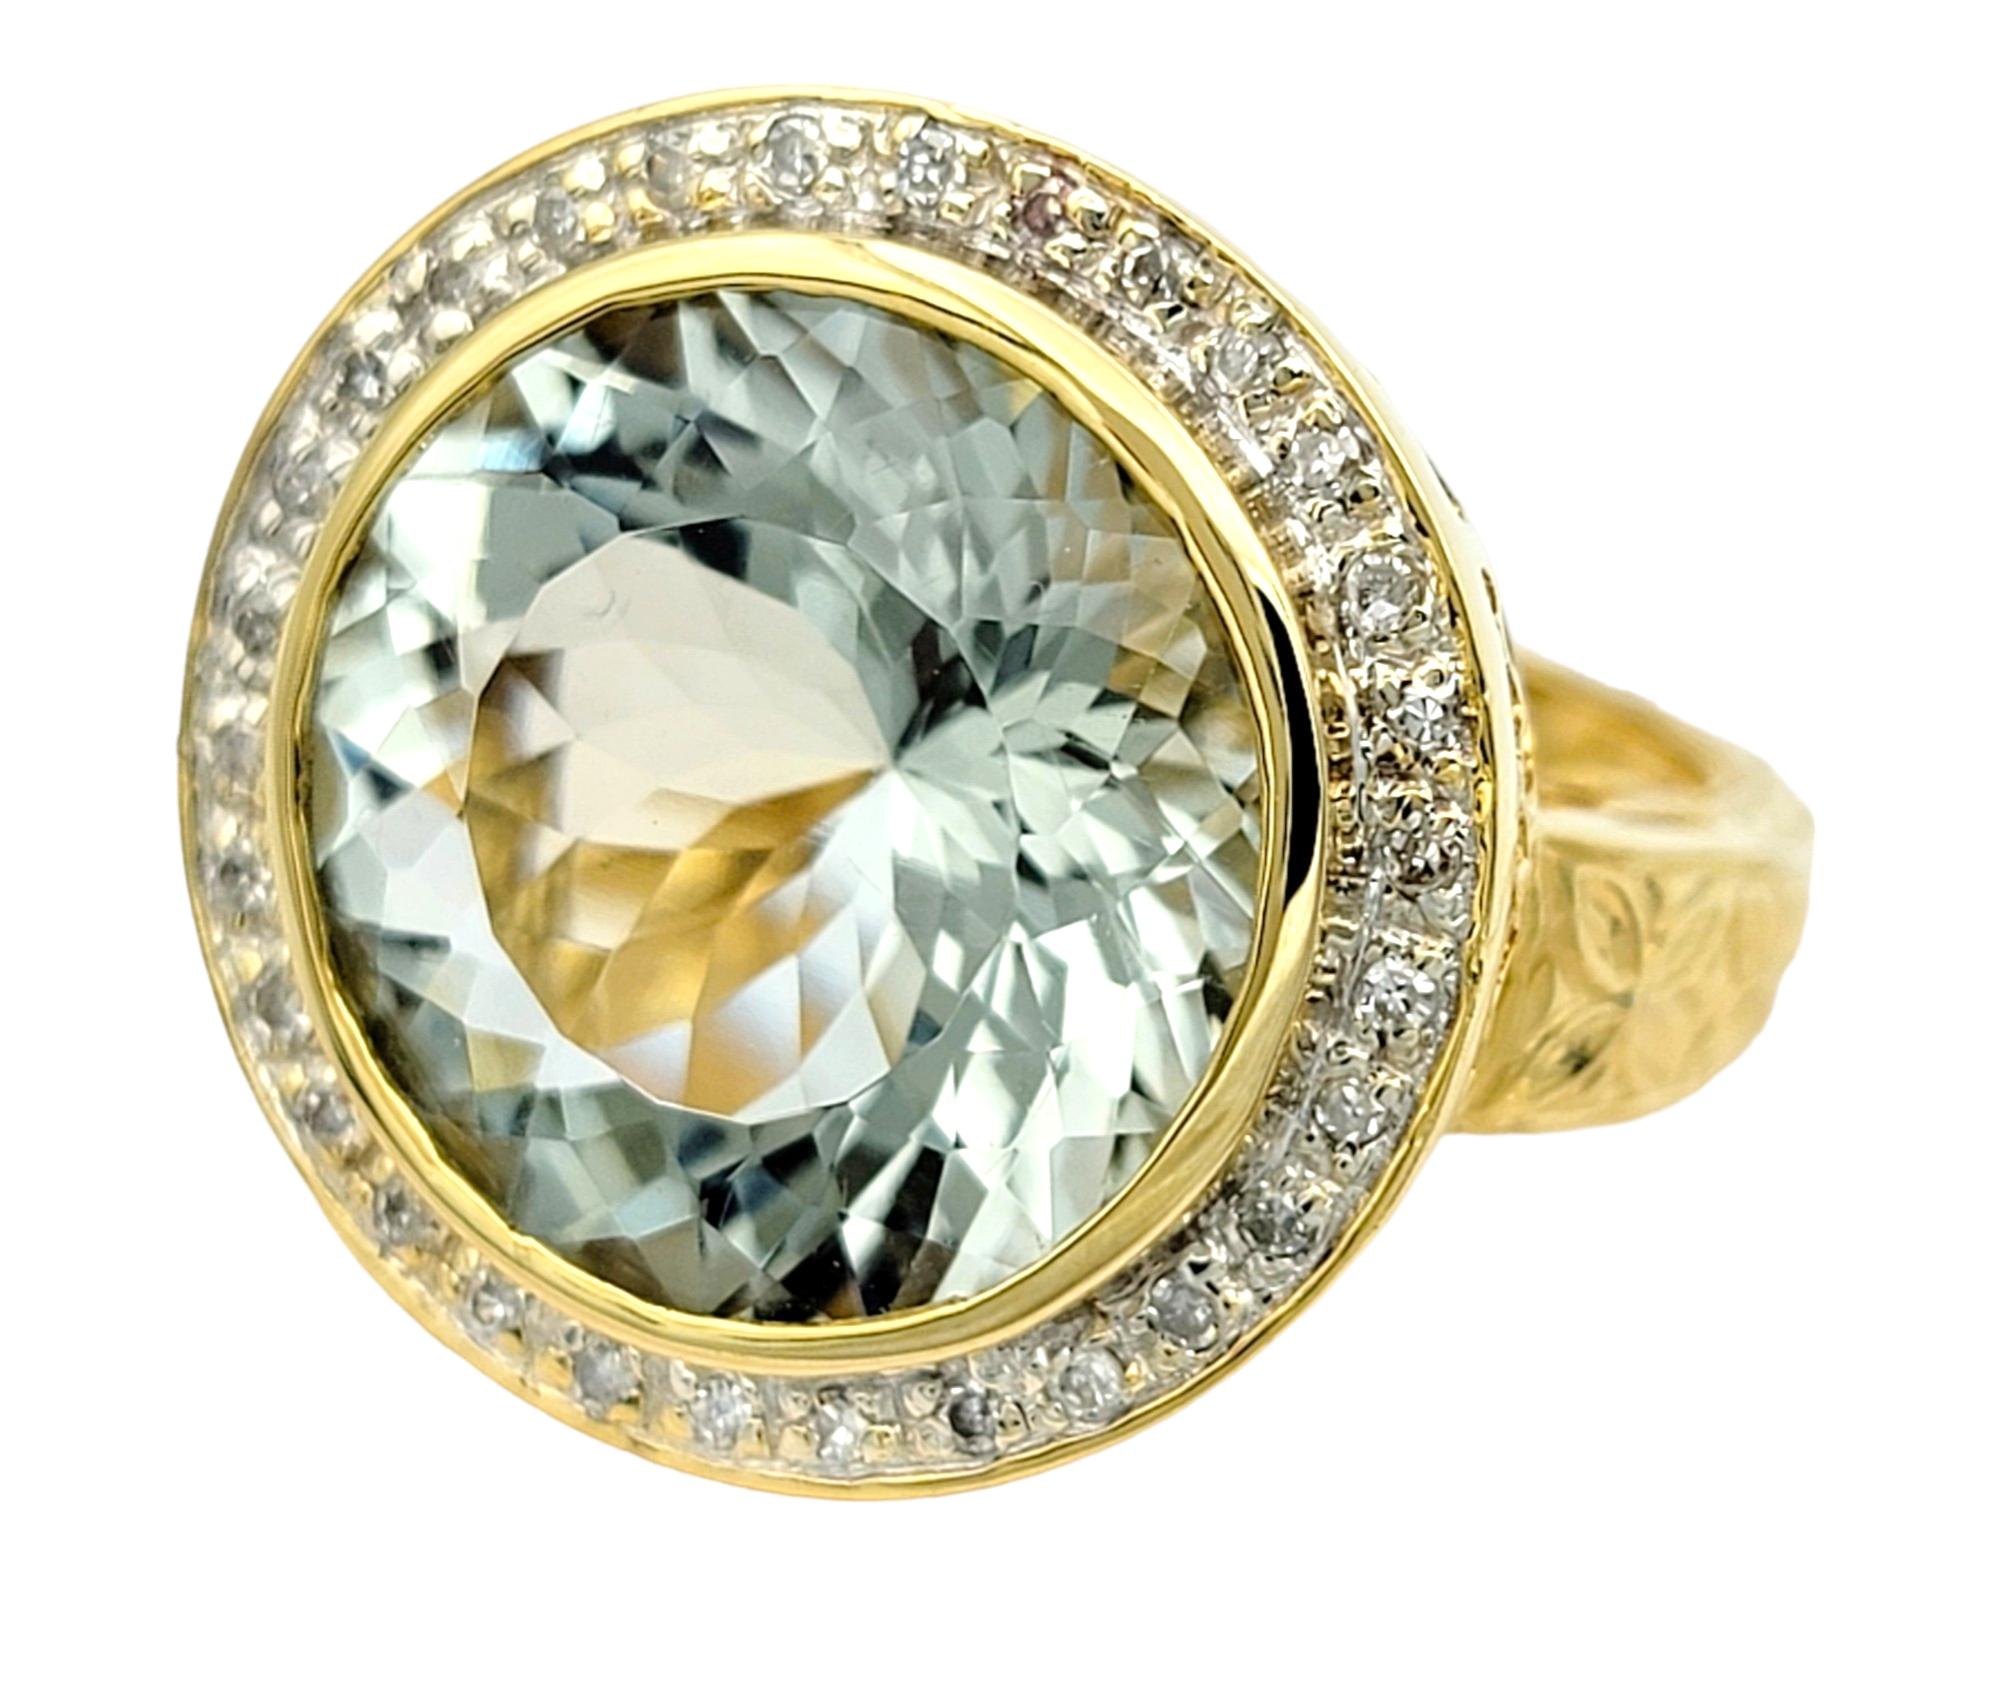 Ringgröße: 5

Der runde Prasiolit-Edelstein strahlt in einem faszinierenden Farbton, der die ruhigen Grün- und Blautöne mischt, und steht im Mittelpunkt dieses exquisiten Rings. Der Prasiolith ist in elegantes 14-karätiges Weißgold gefasst und mit